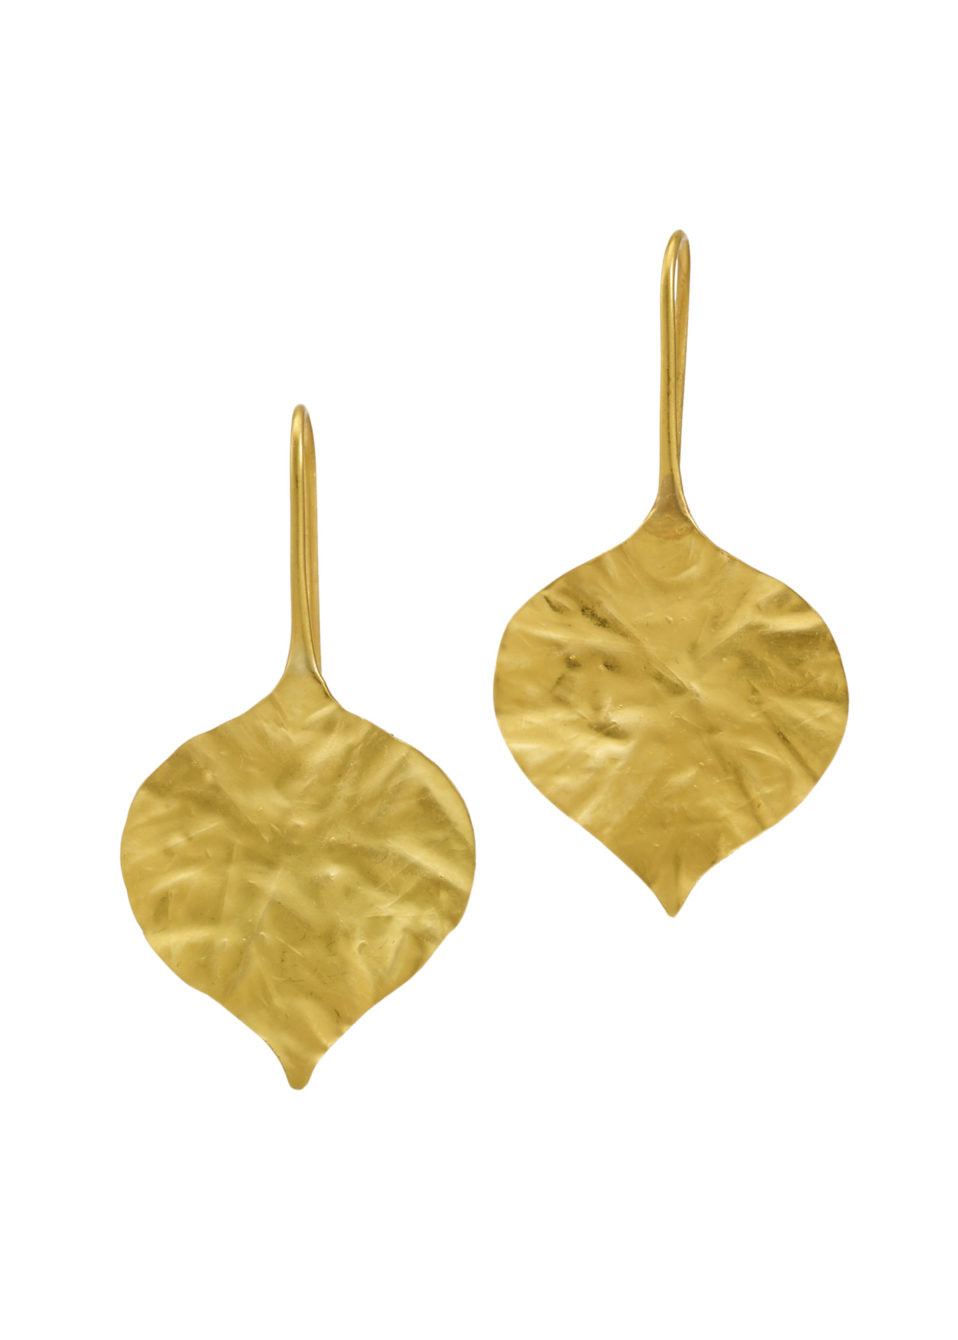 Pippa Small 22kt Gold Peepal Leaf earrings